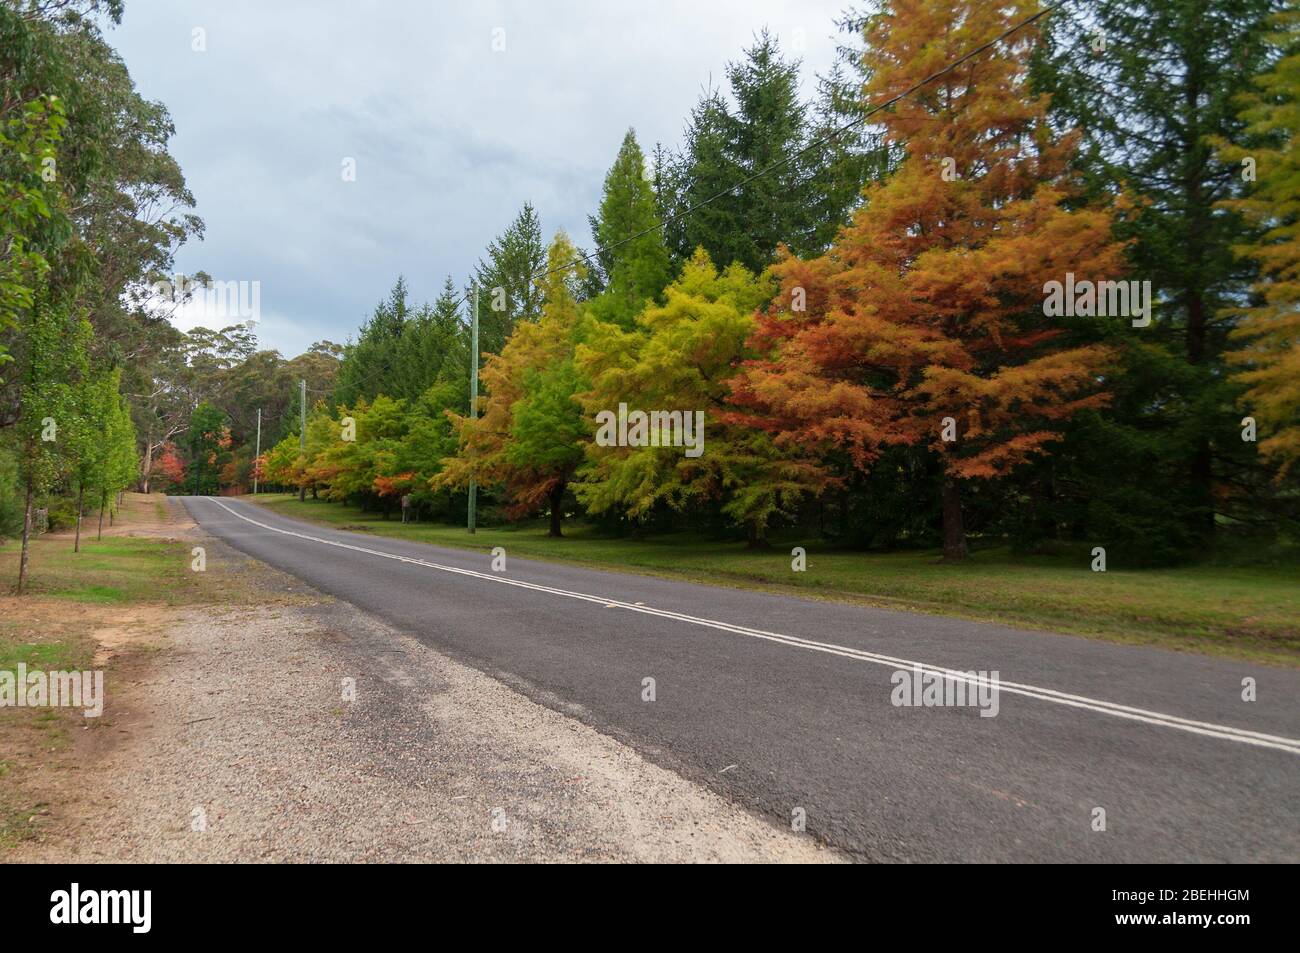 Paesaggio di campagna con strada asfaltata e alberi con foglie autunnali colorate sul lato della strada. Mount Wilson, Australia Foto Stock